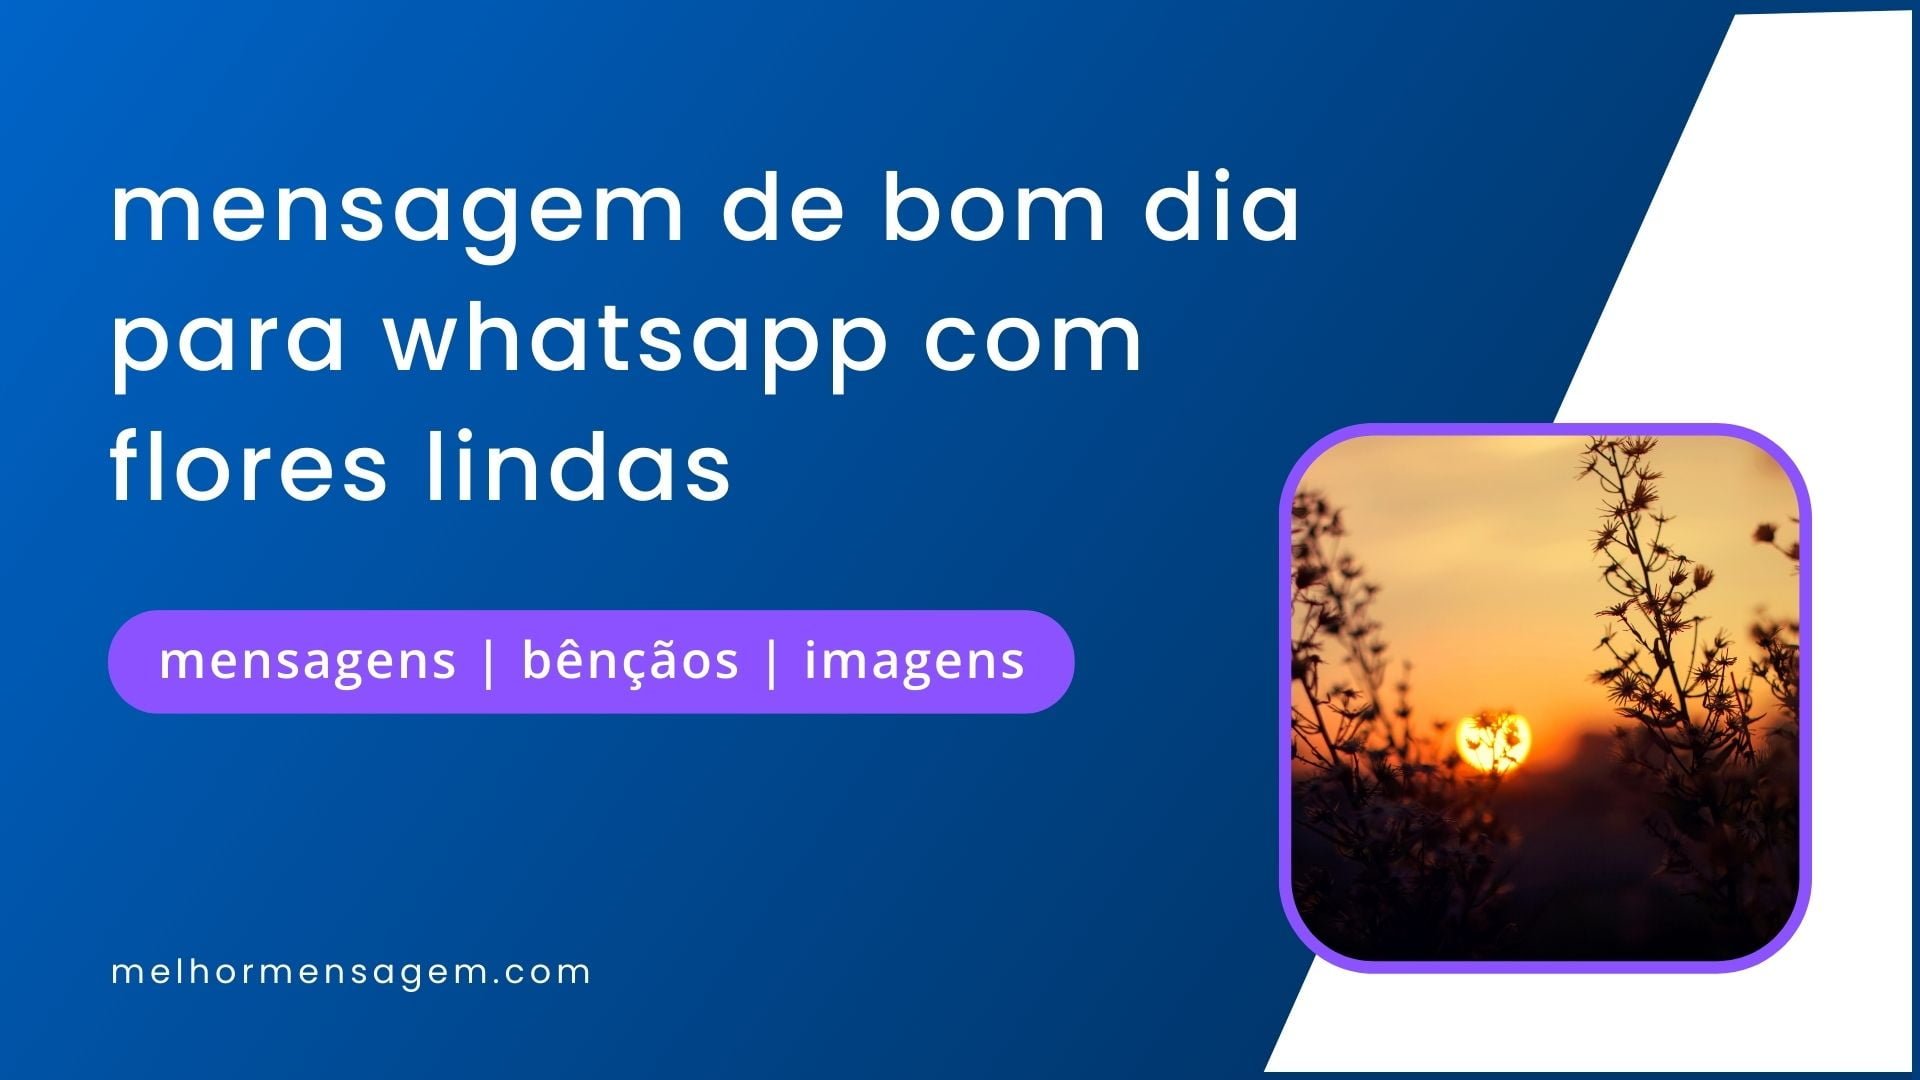 300+ mensagem de bom dia para whatsapp com flores lindas